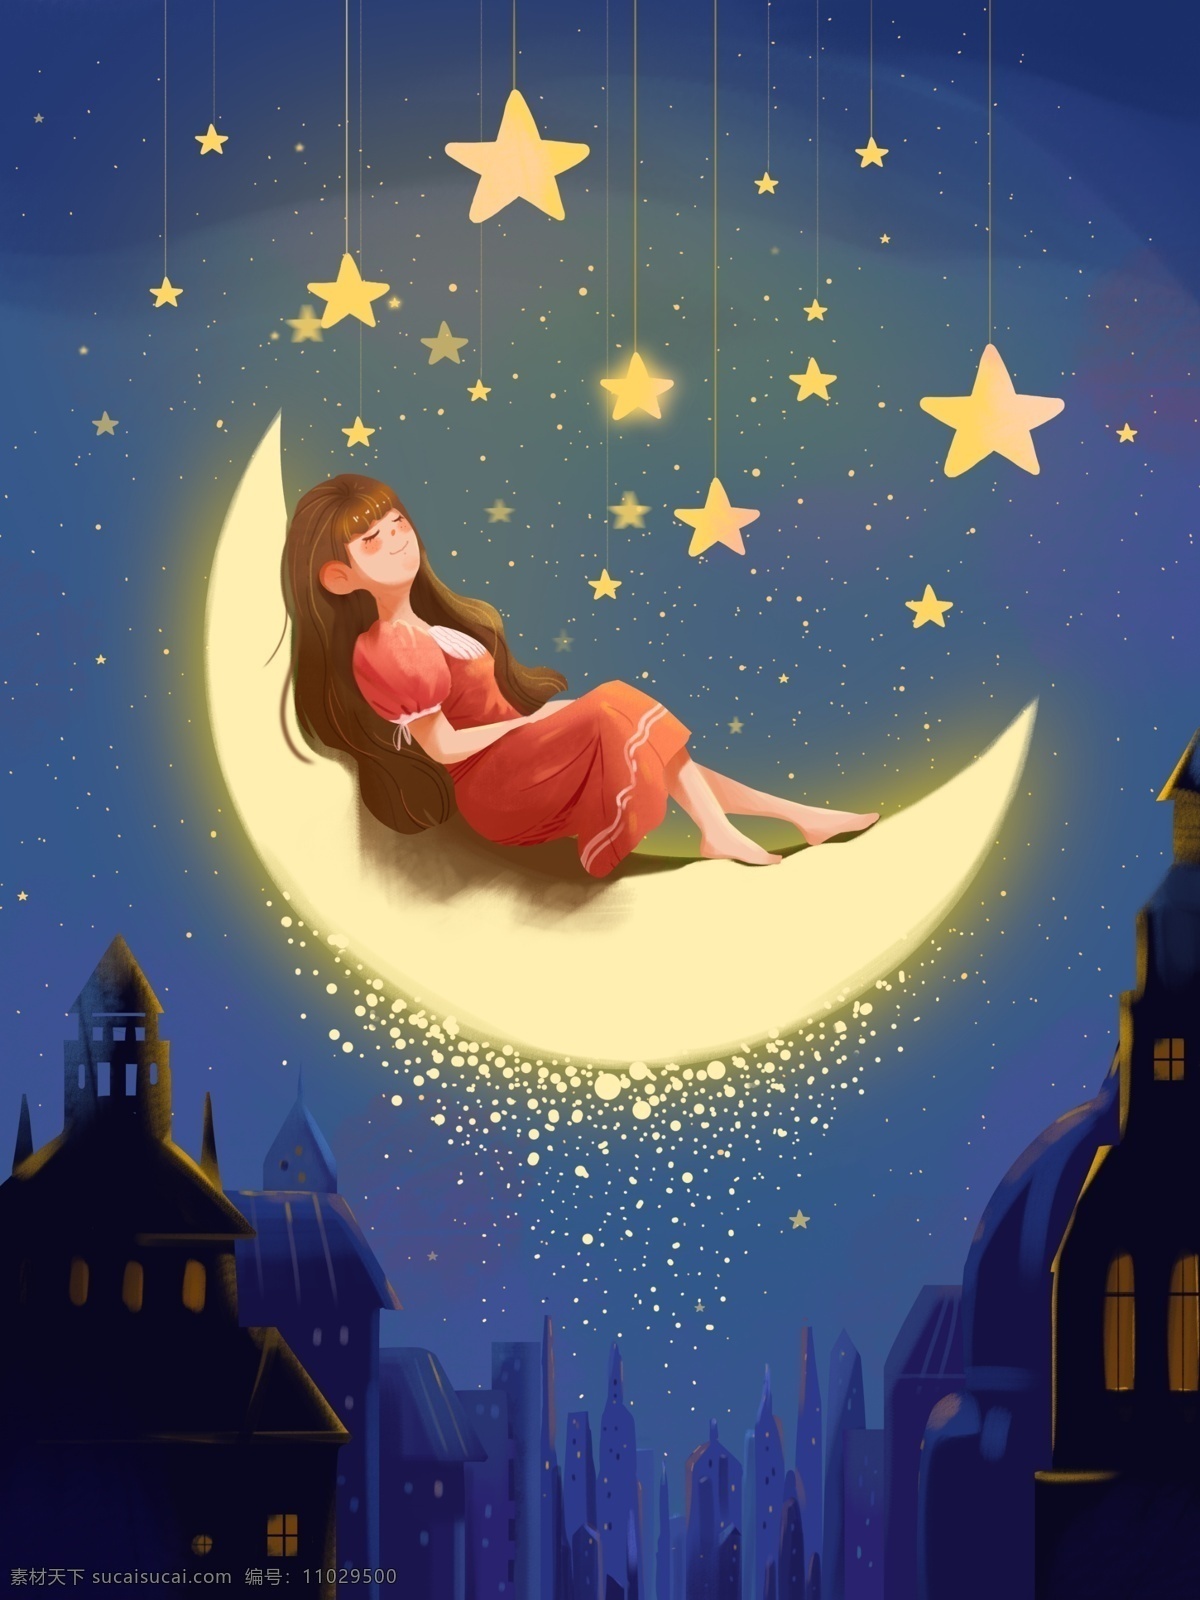 世界 睡眠 日晚 安 场景 插画 世界睡眠日 晚安 温馨 女孩 月亮